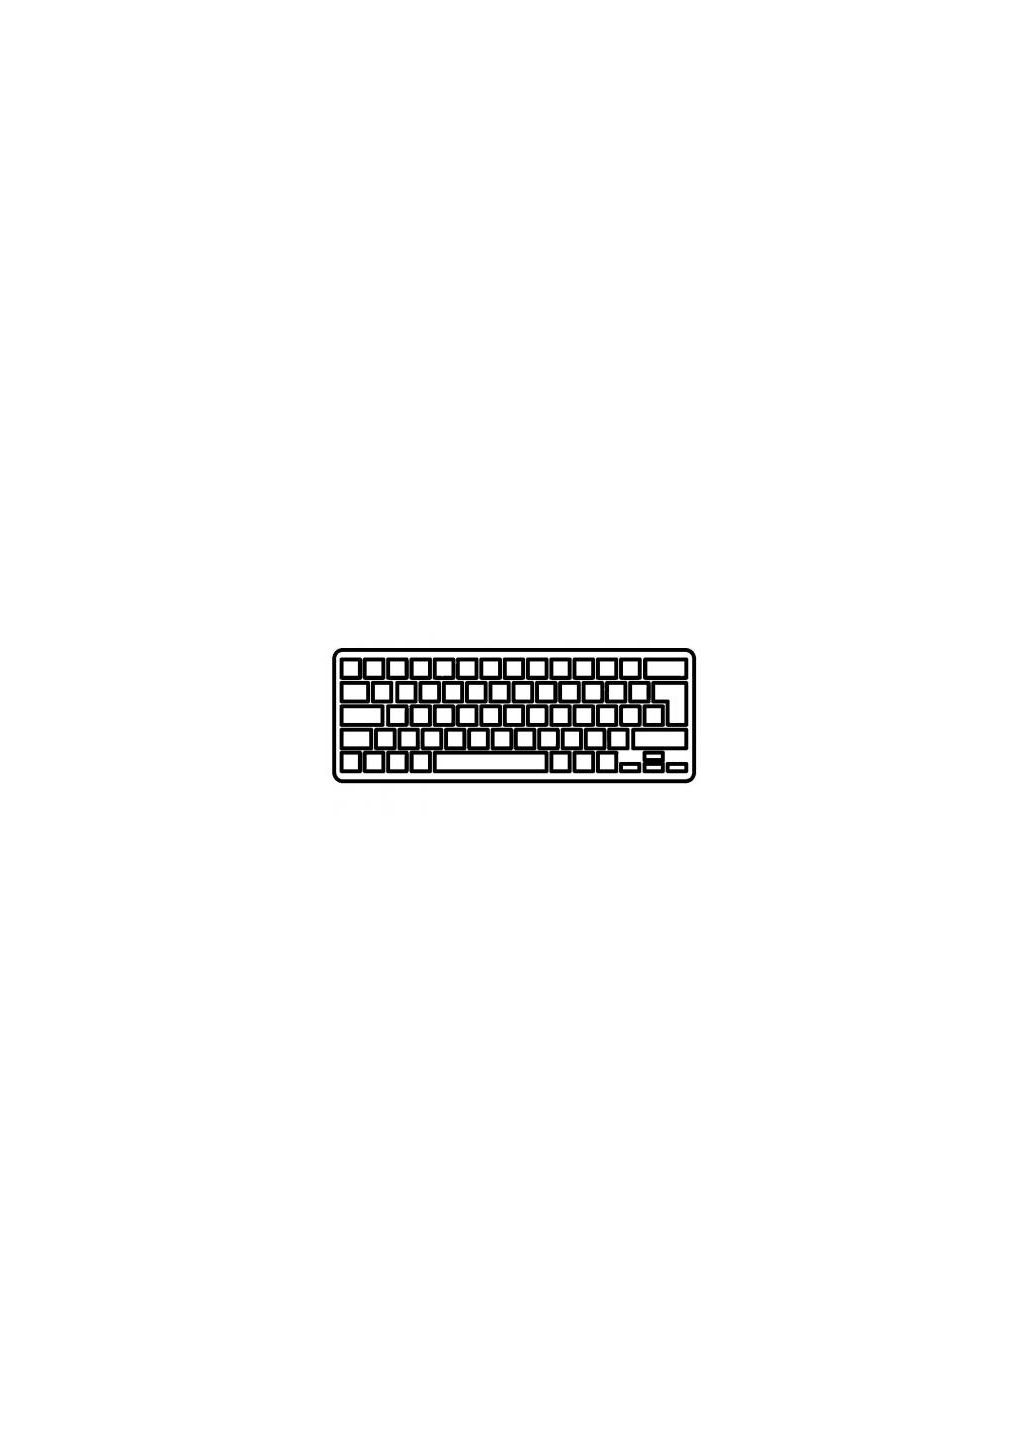 Клавиатура ноутбука Pavilion dv43000 серебро UA (A43491) HP pavilion dv4-3000 серебро ua (276707723)